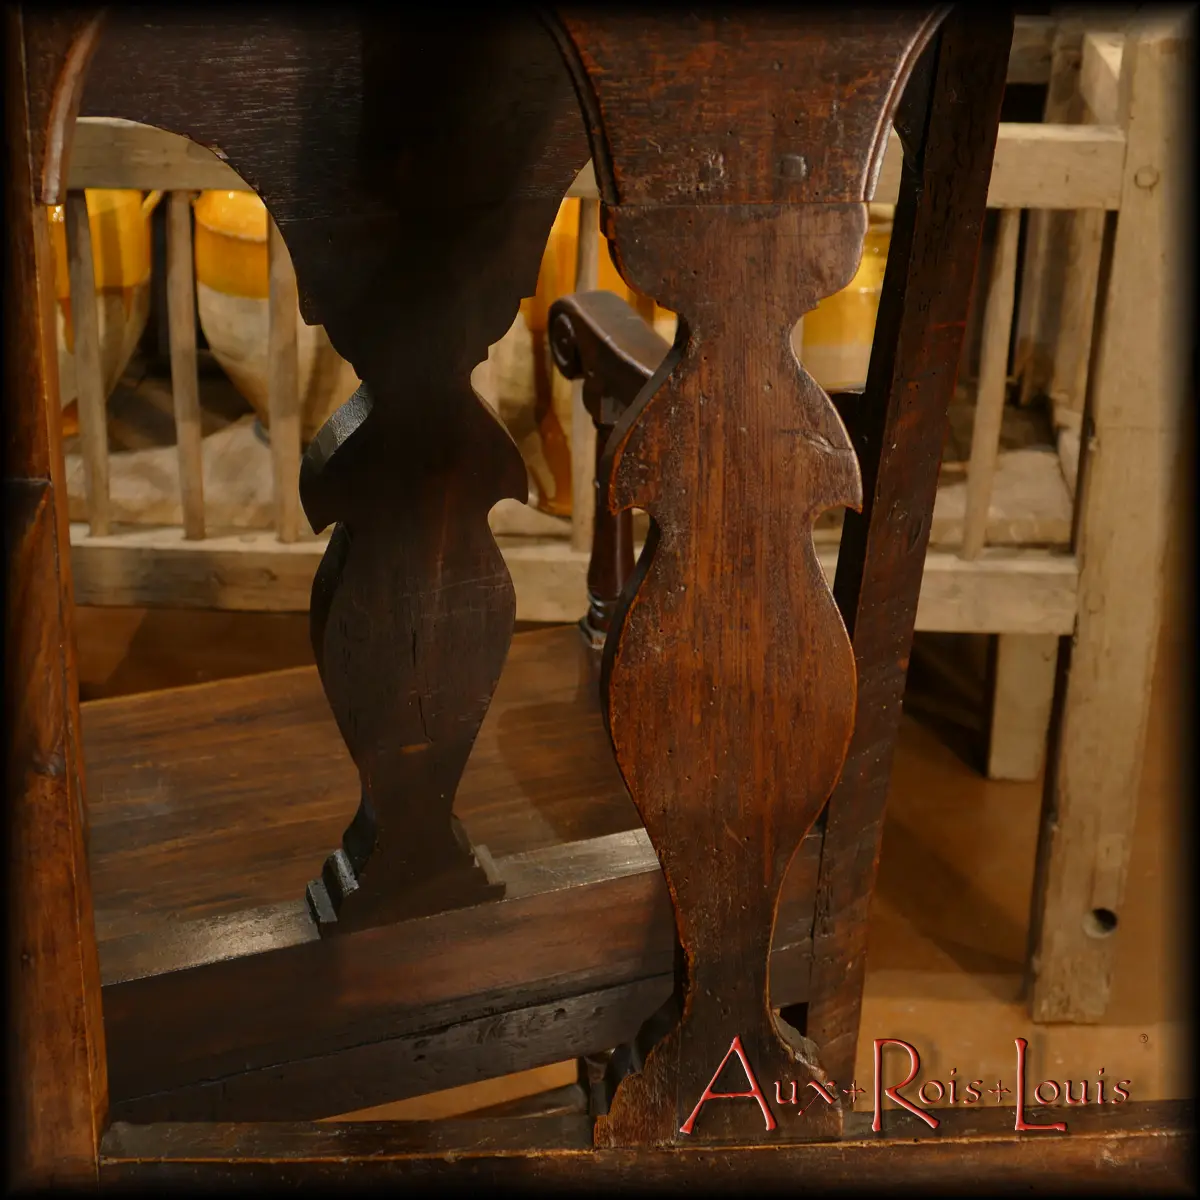 On observe sur les dossiers de ces deux chaises à bras Louis XIII, deux étonnants motifs de silhouettes humaines détourées. Elles sont expressives et apportent une touche de poésie à cet ensemble conçu manifestement pour un couple, l’une des deux assises étant plus petite que l’autre.